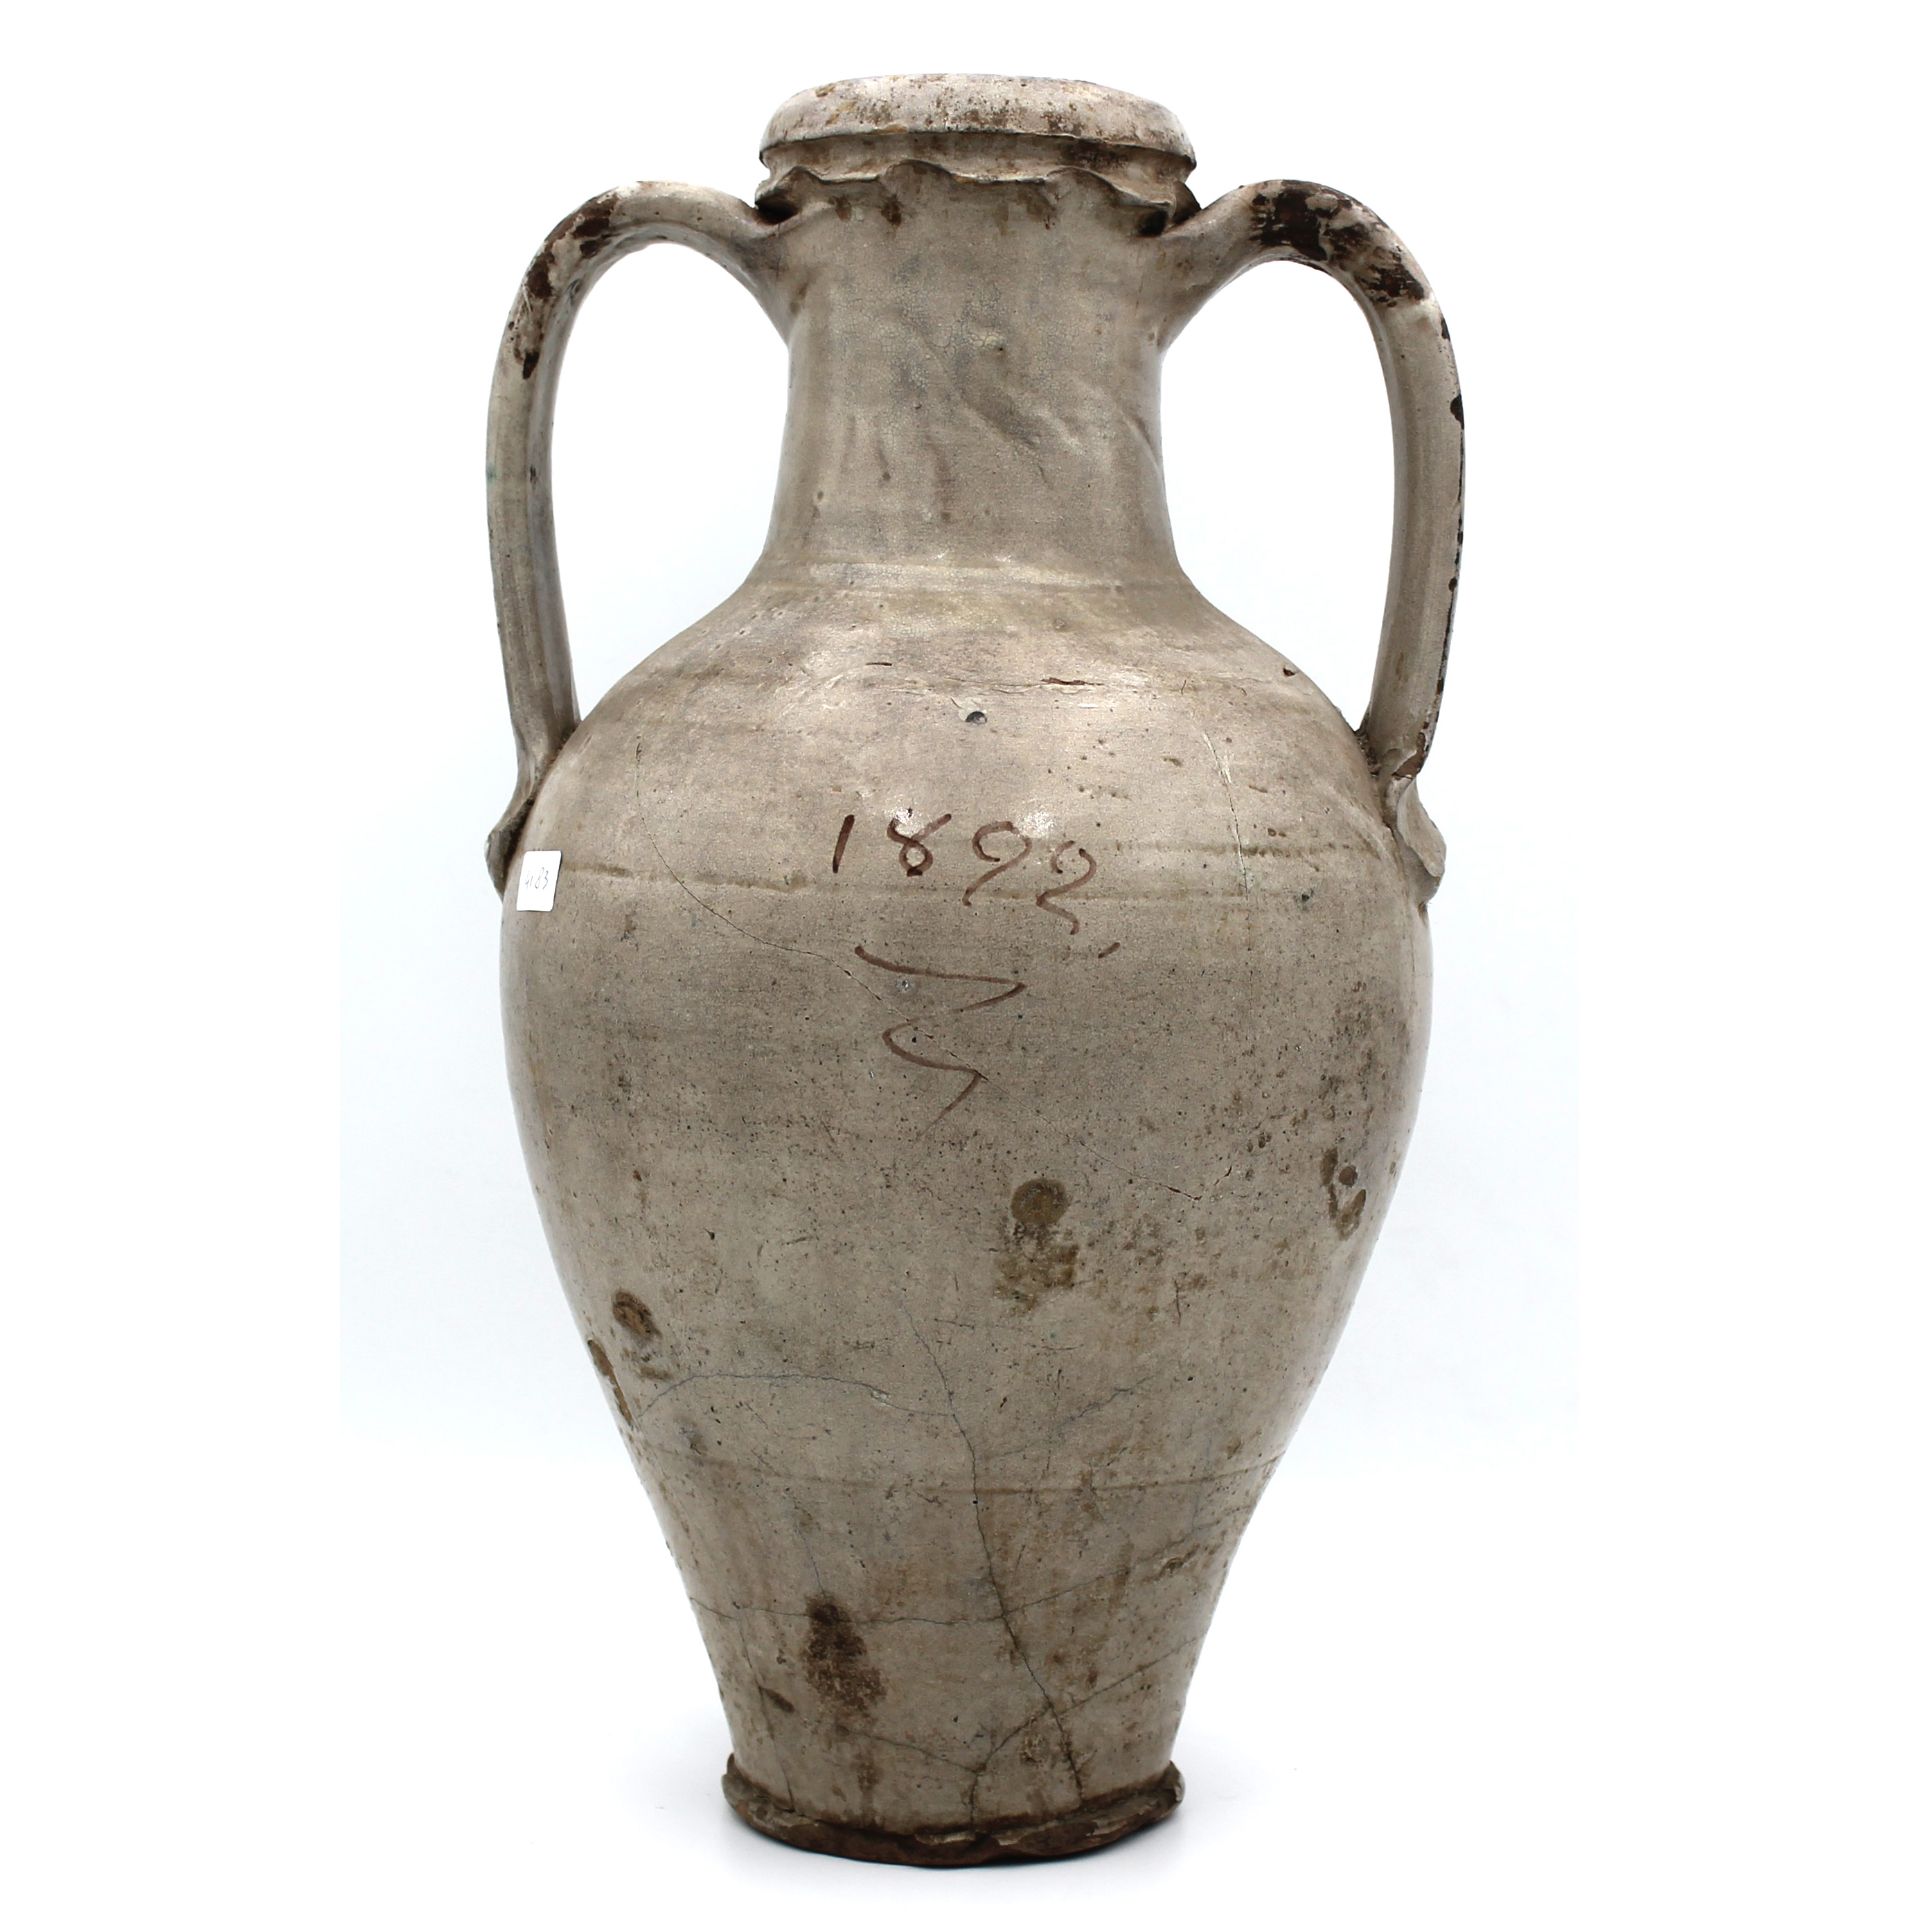 Grande anfora - Large amphora - Image 2 of 2